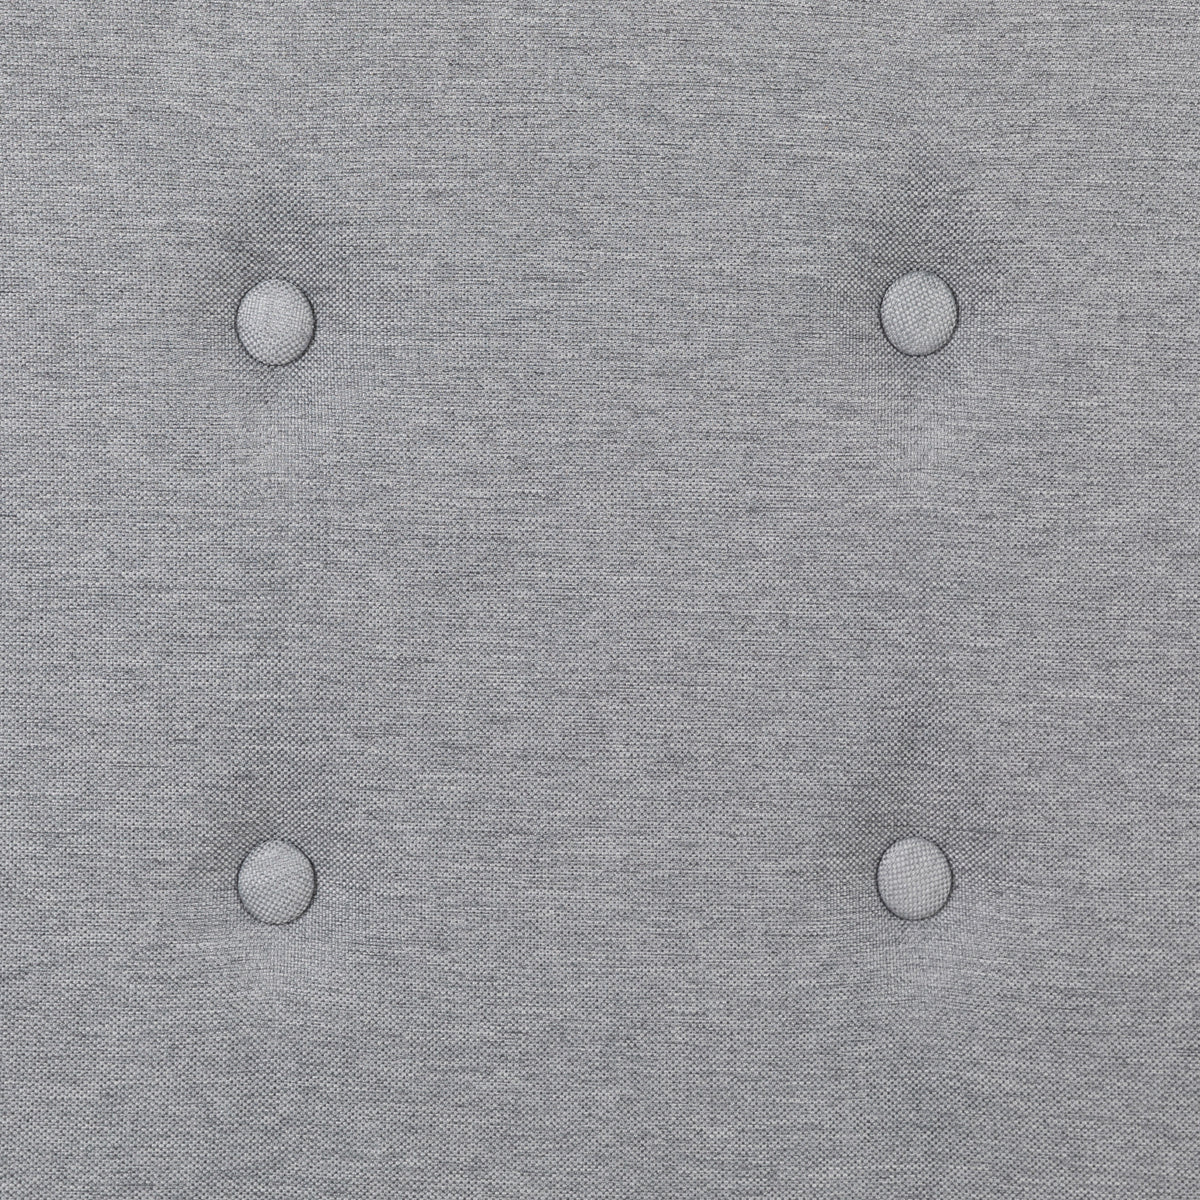 Light Gray,Full |#| Full Size Upholstered Metal Panel Headboard in Tufted Light Gray Fabric